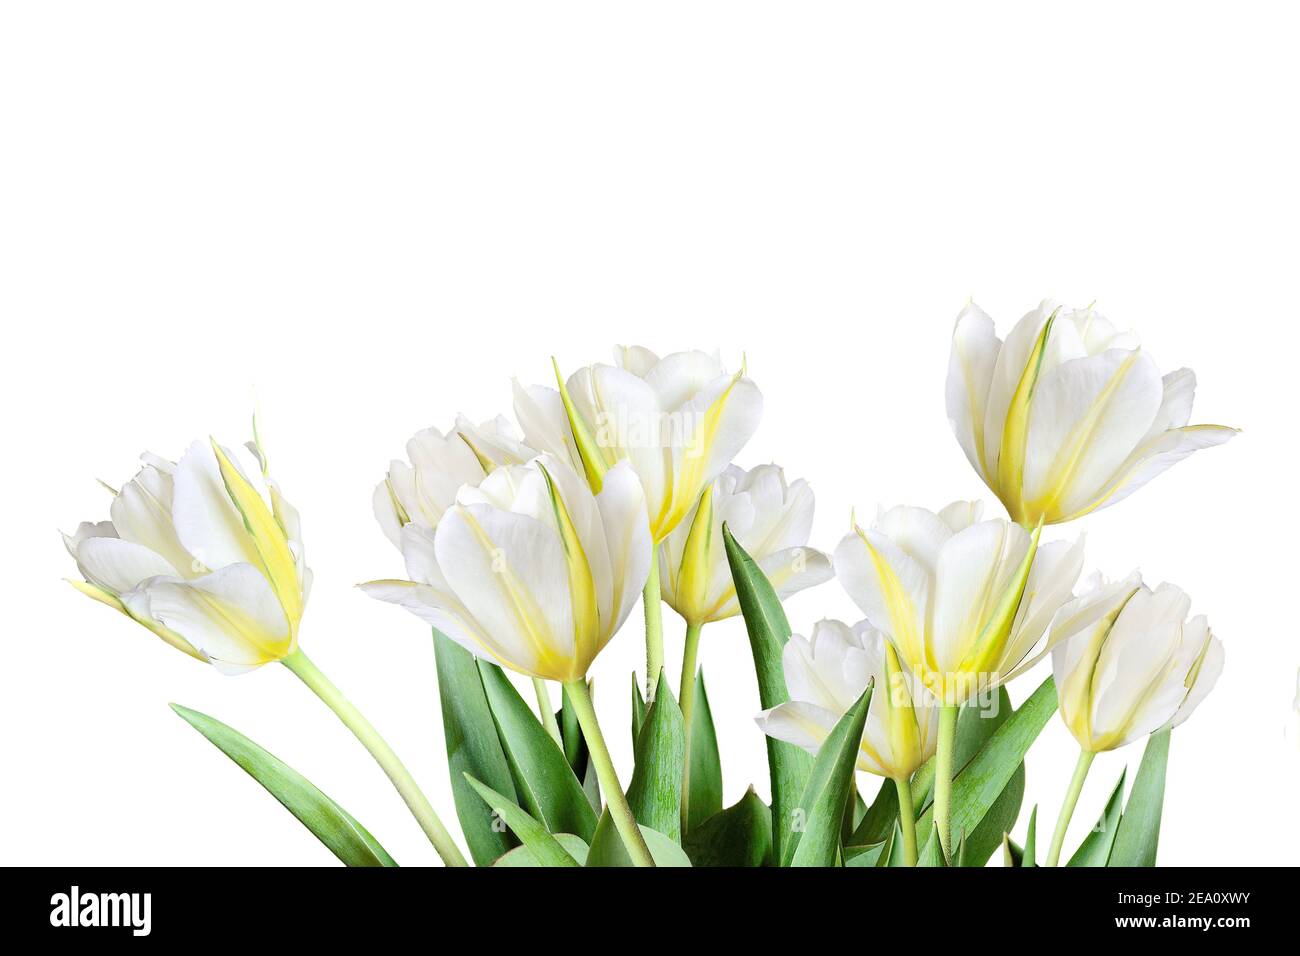 Frühlingsbouquet von weißen und gelben Tulpen in einem hohen Schlüssel isoliert auf weißem Hintergrund - schöne florale Hintergrund mit Copyspace für Text Stockfoto